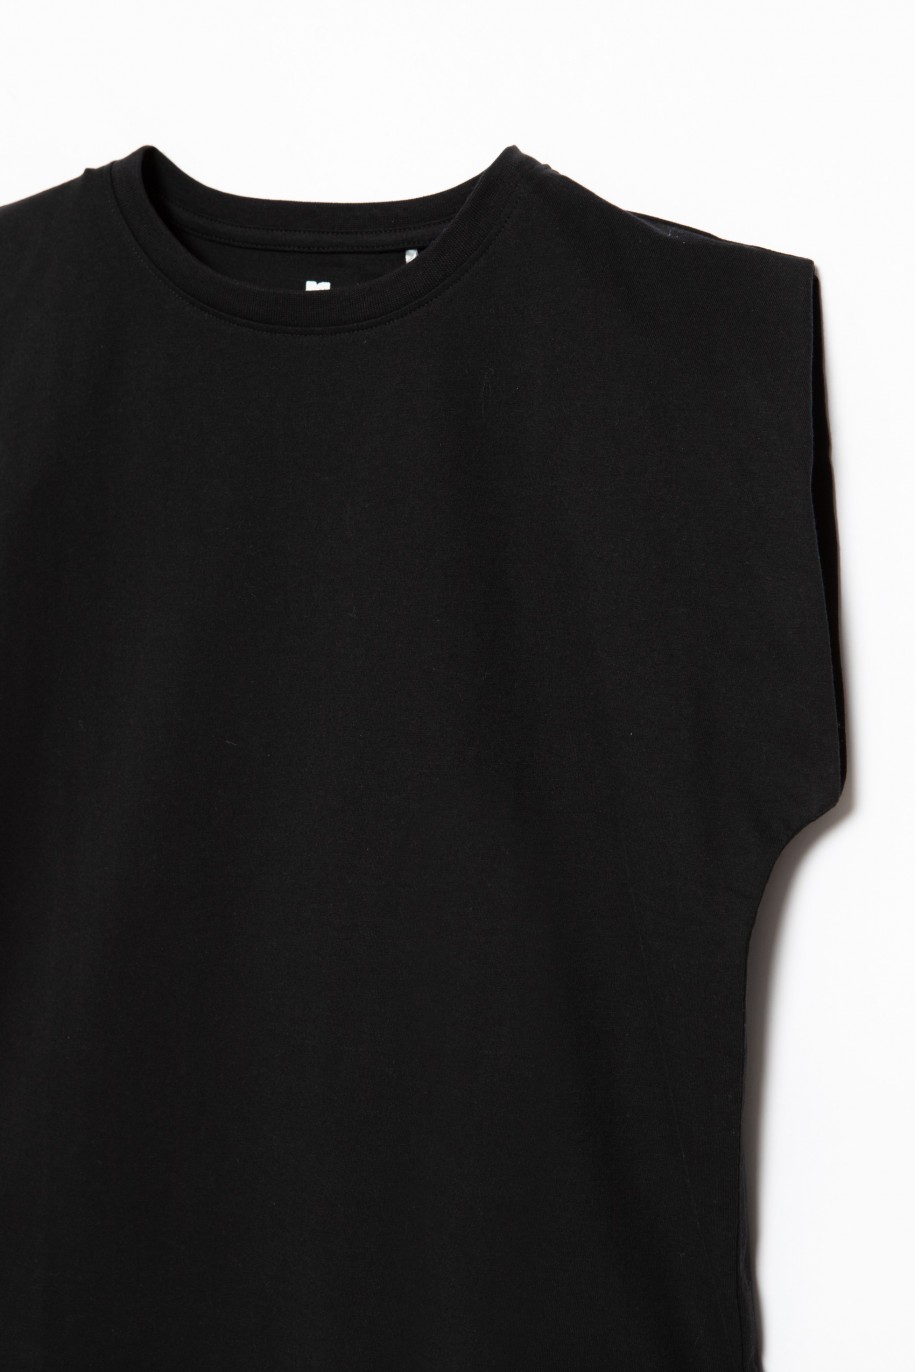 Czarny t-shirt dla dziewczyny - 28559